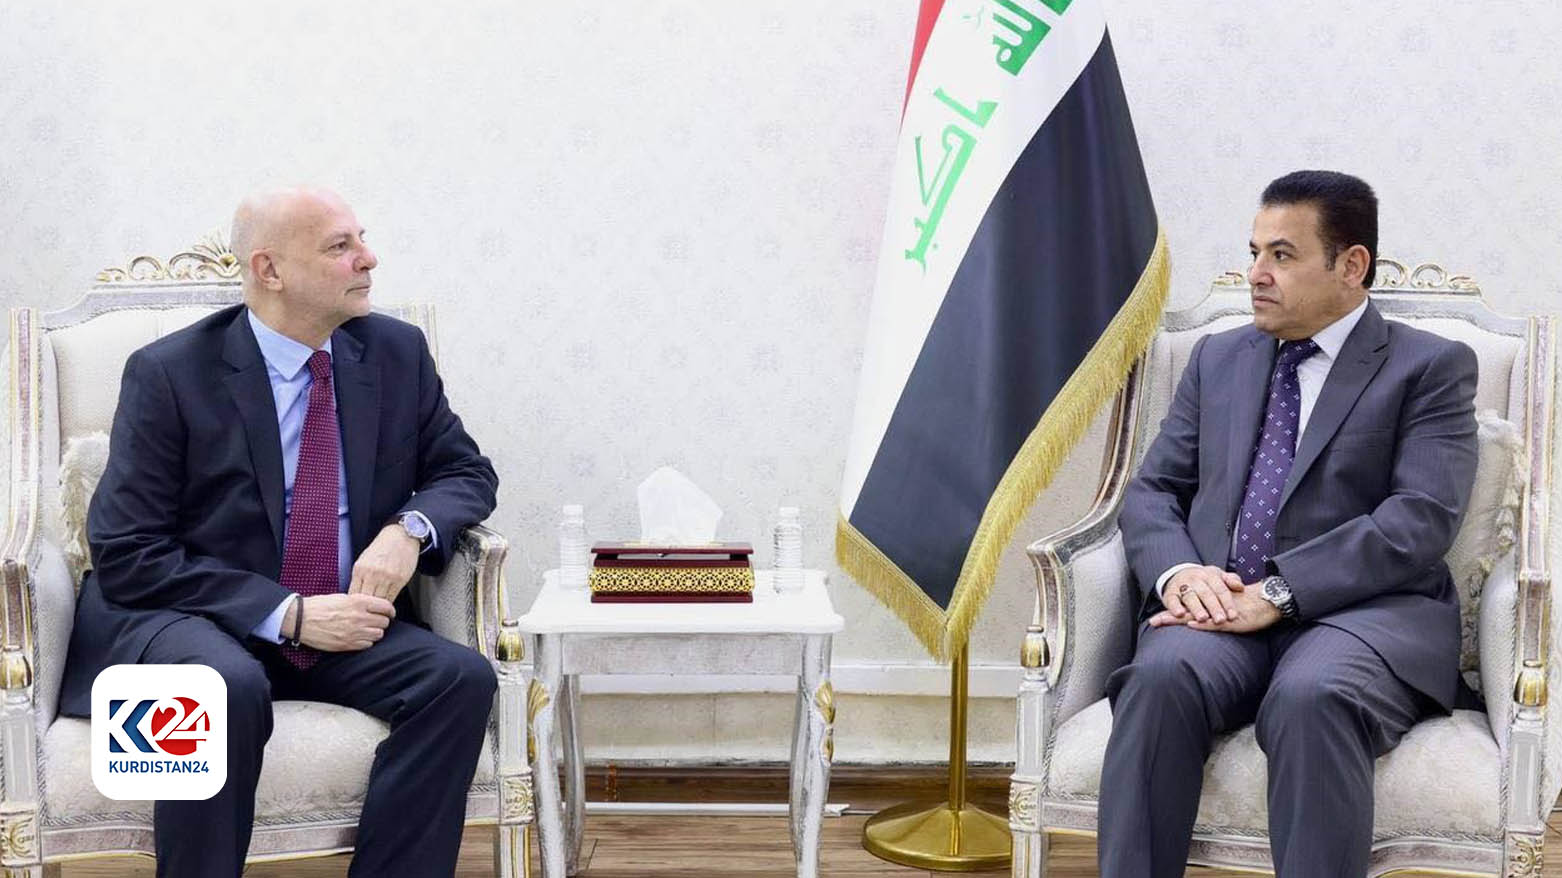 کلودیو کوردون، معاون نماینده ویژه سازمان ملل در عراق(سمت چپ) روز پنجشنبه، ١٨ ژانویه ٢٠٢٤  در بغداد با قاسم الاعرجی، مشاور امنیت ملی عراق دیدار کرد - عکس: یونامی